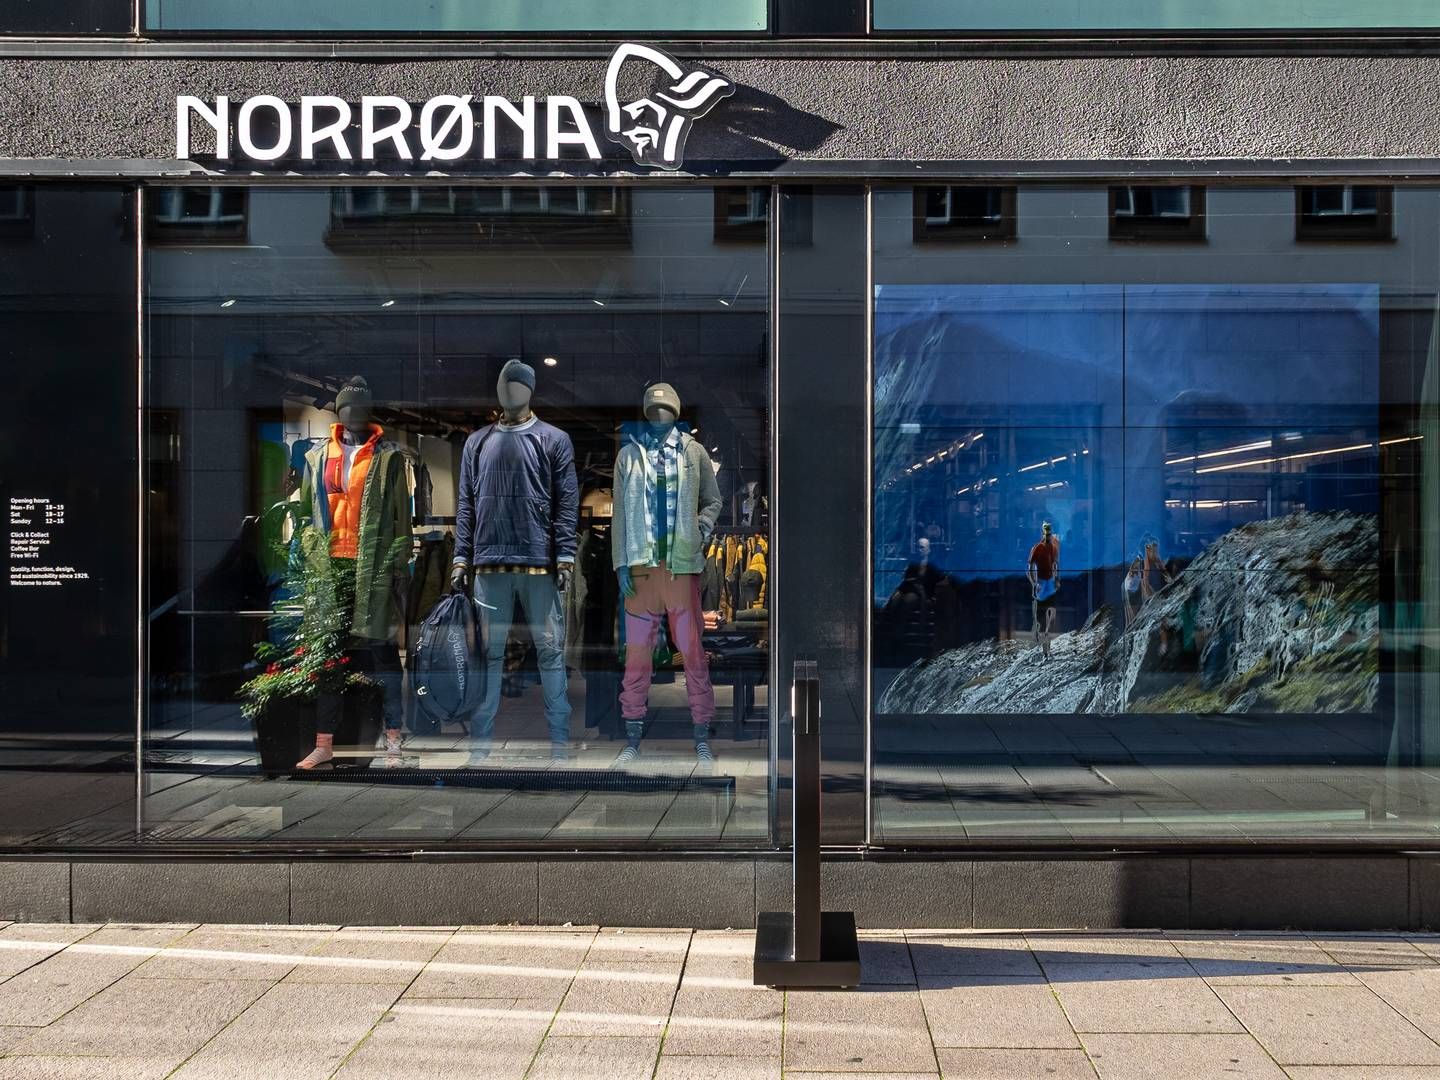 TILBAKE I GØTEBORG: Etter å ha lett i flere år har Norrøna funnet lokaler til å gjenåpne butikken i Gøteborg. | Foto: Norrøna